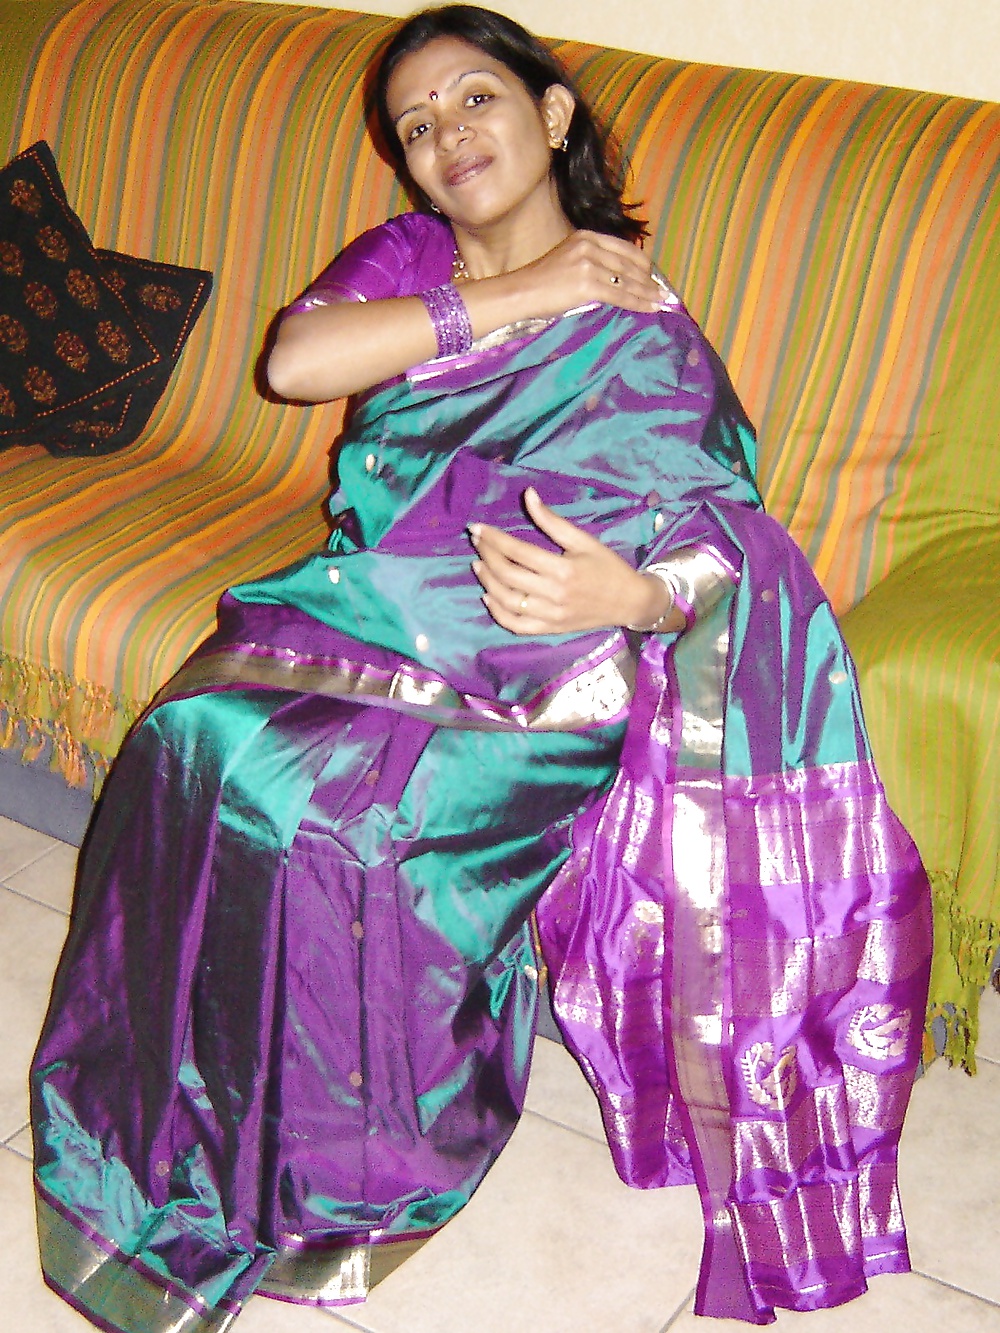 MILF Indien Desi Aime Me Taquiner Avec Un Sari De Soie #26337681